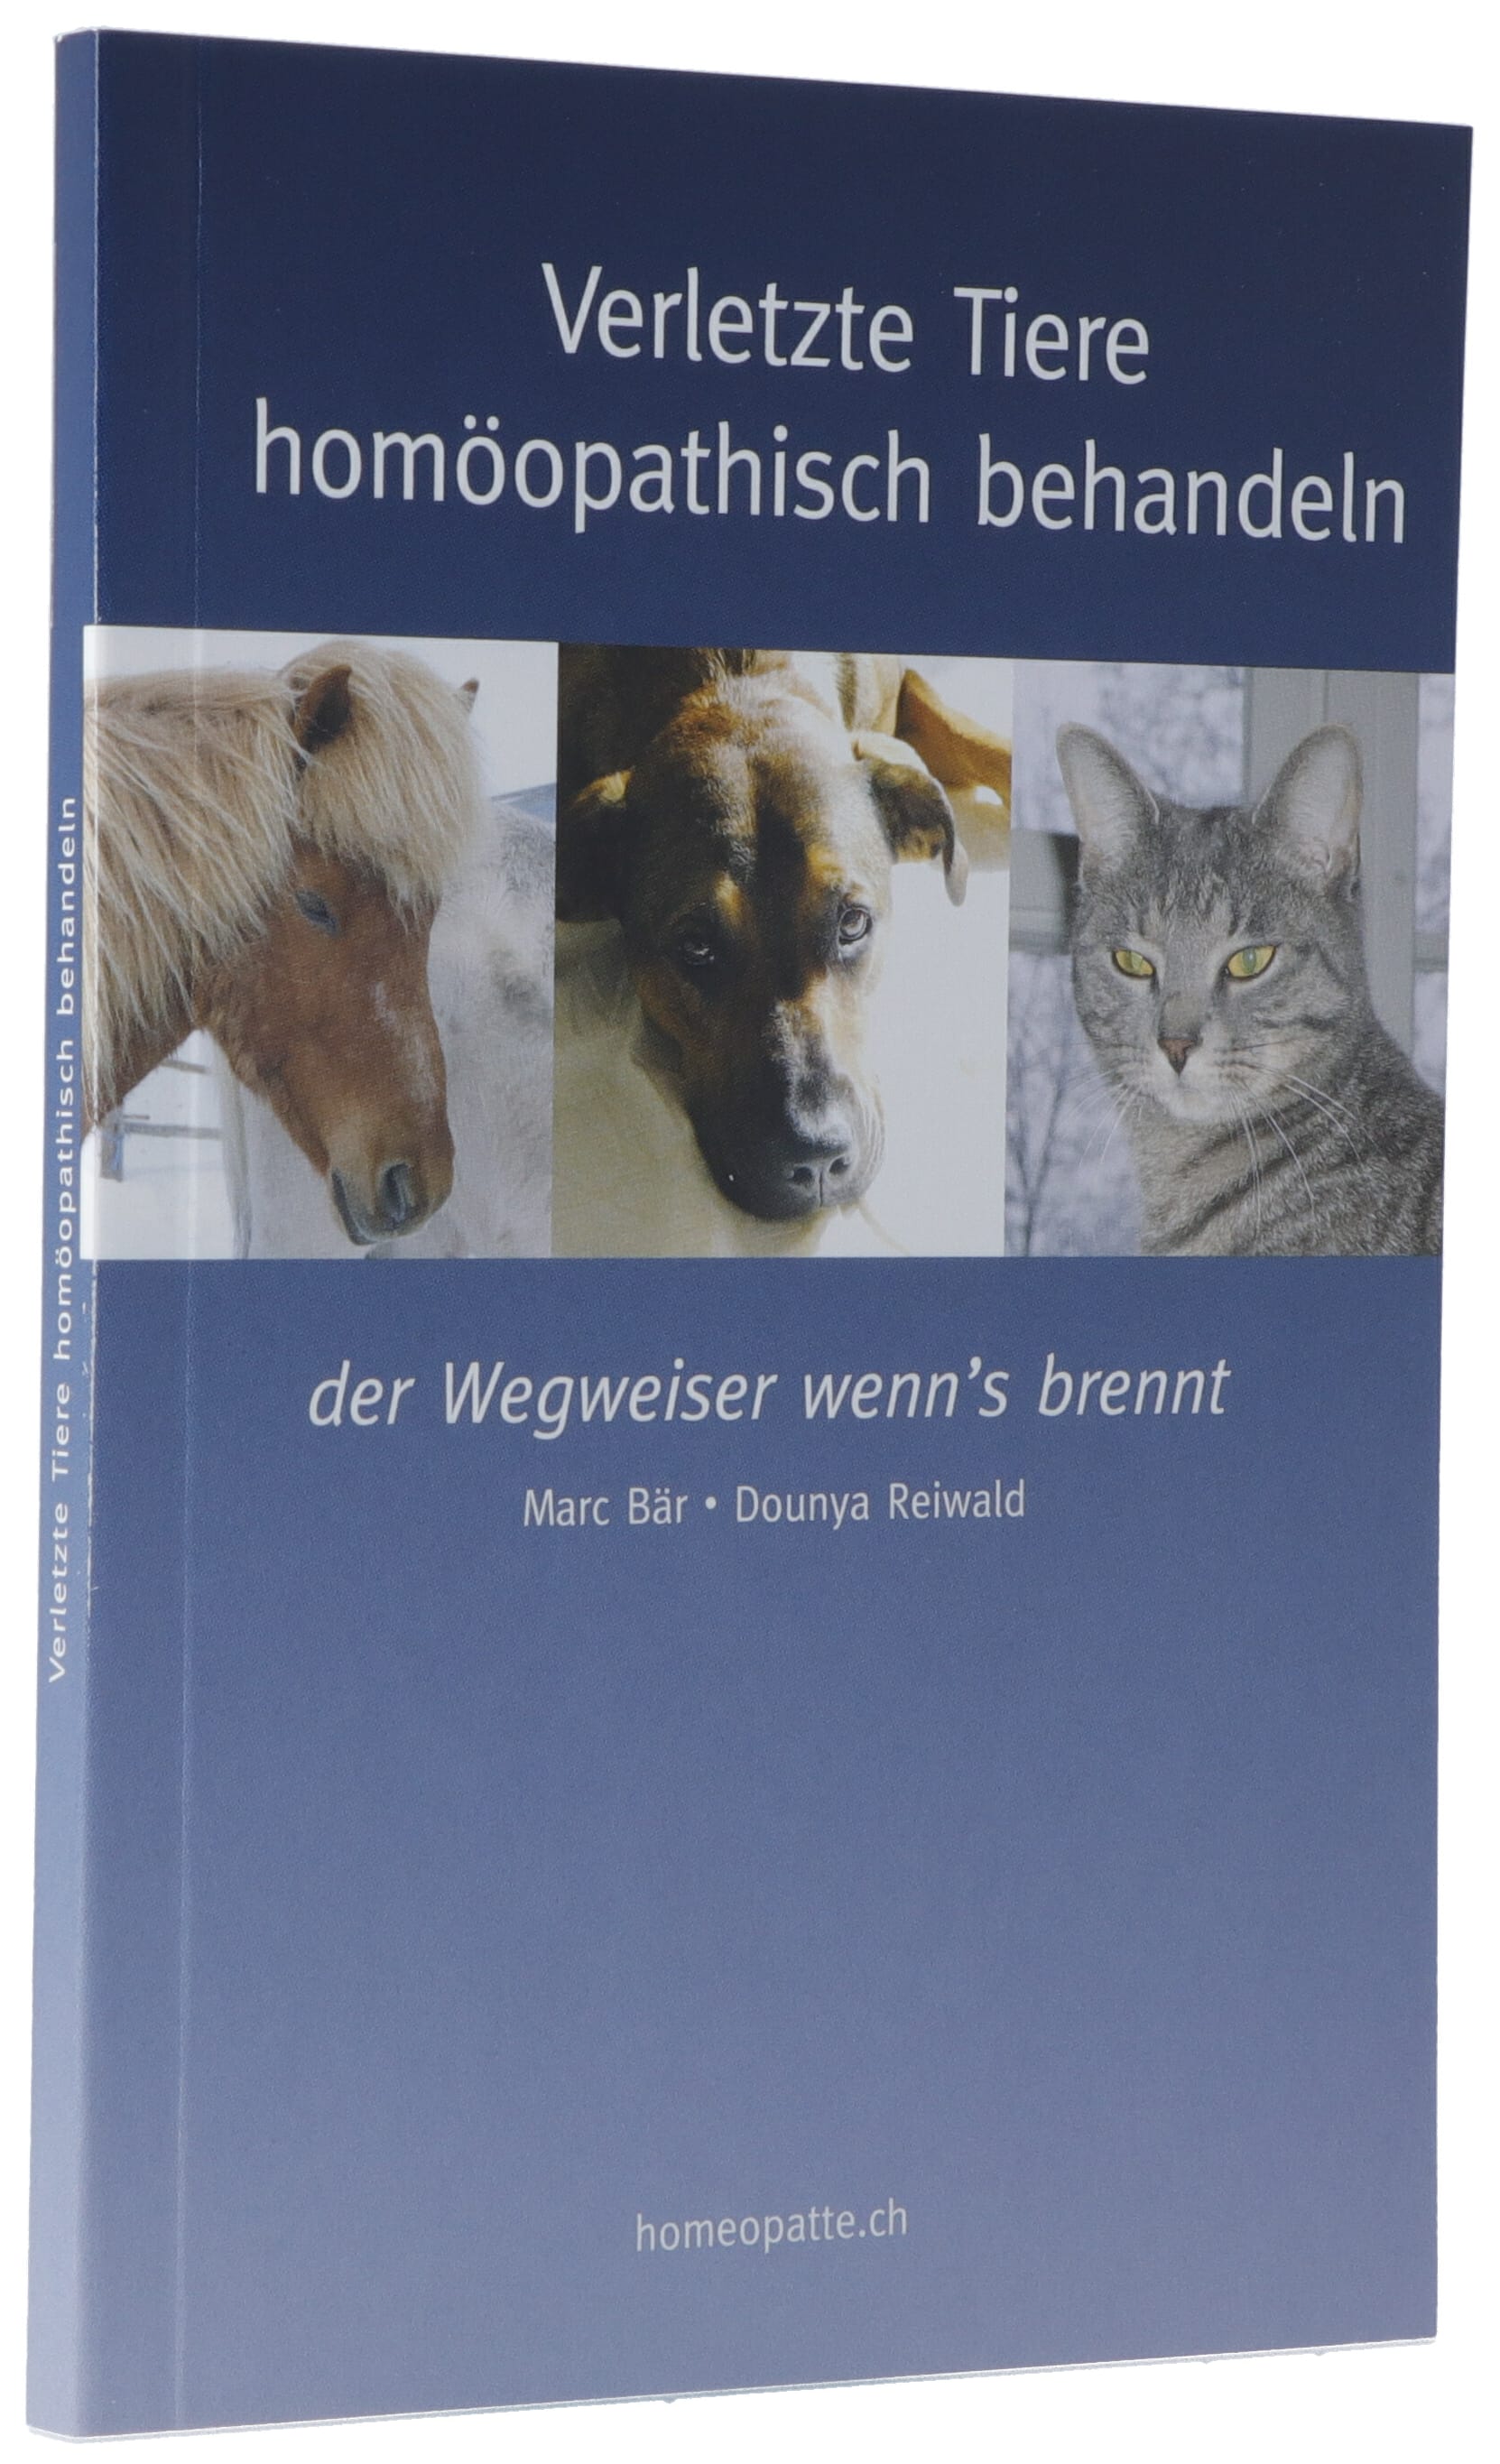 OMIDA Buch Verletzte Tiere homöopathisch behandeln